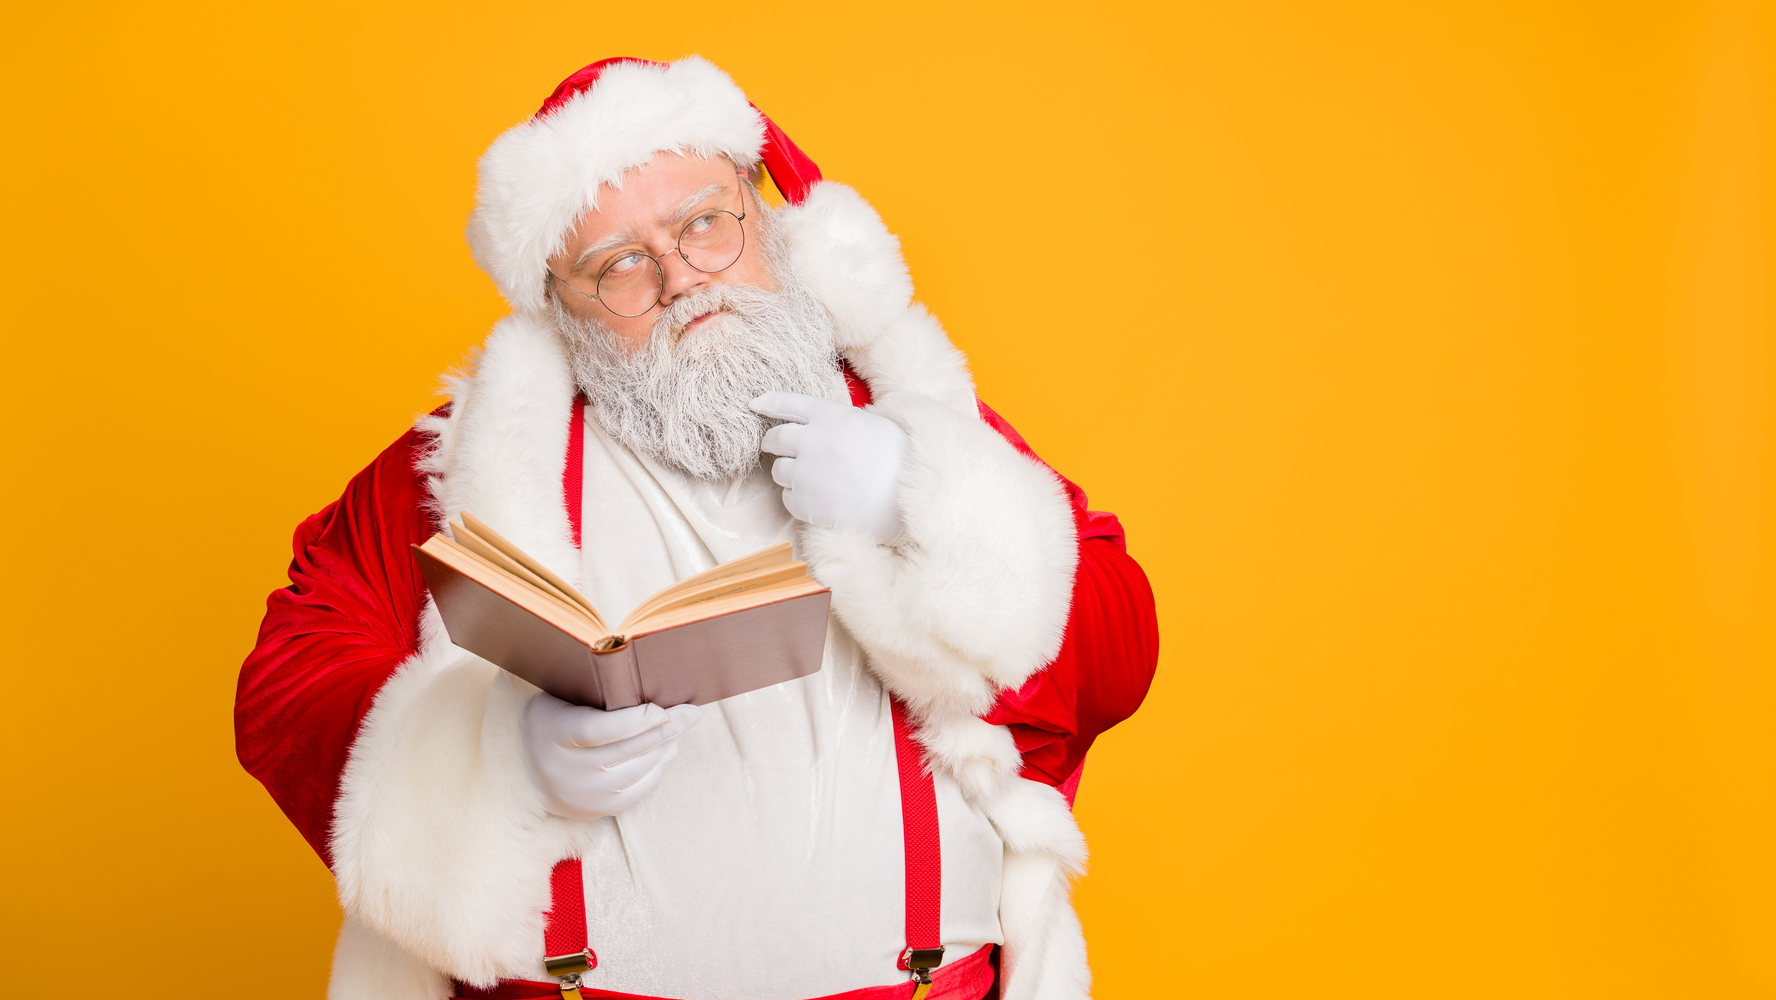 Sociología Desafortunadamente simbólico Y a todo esto, ¿quién fue el verdadero Santa Claus? – El Financiero